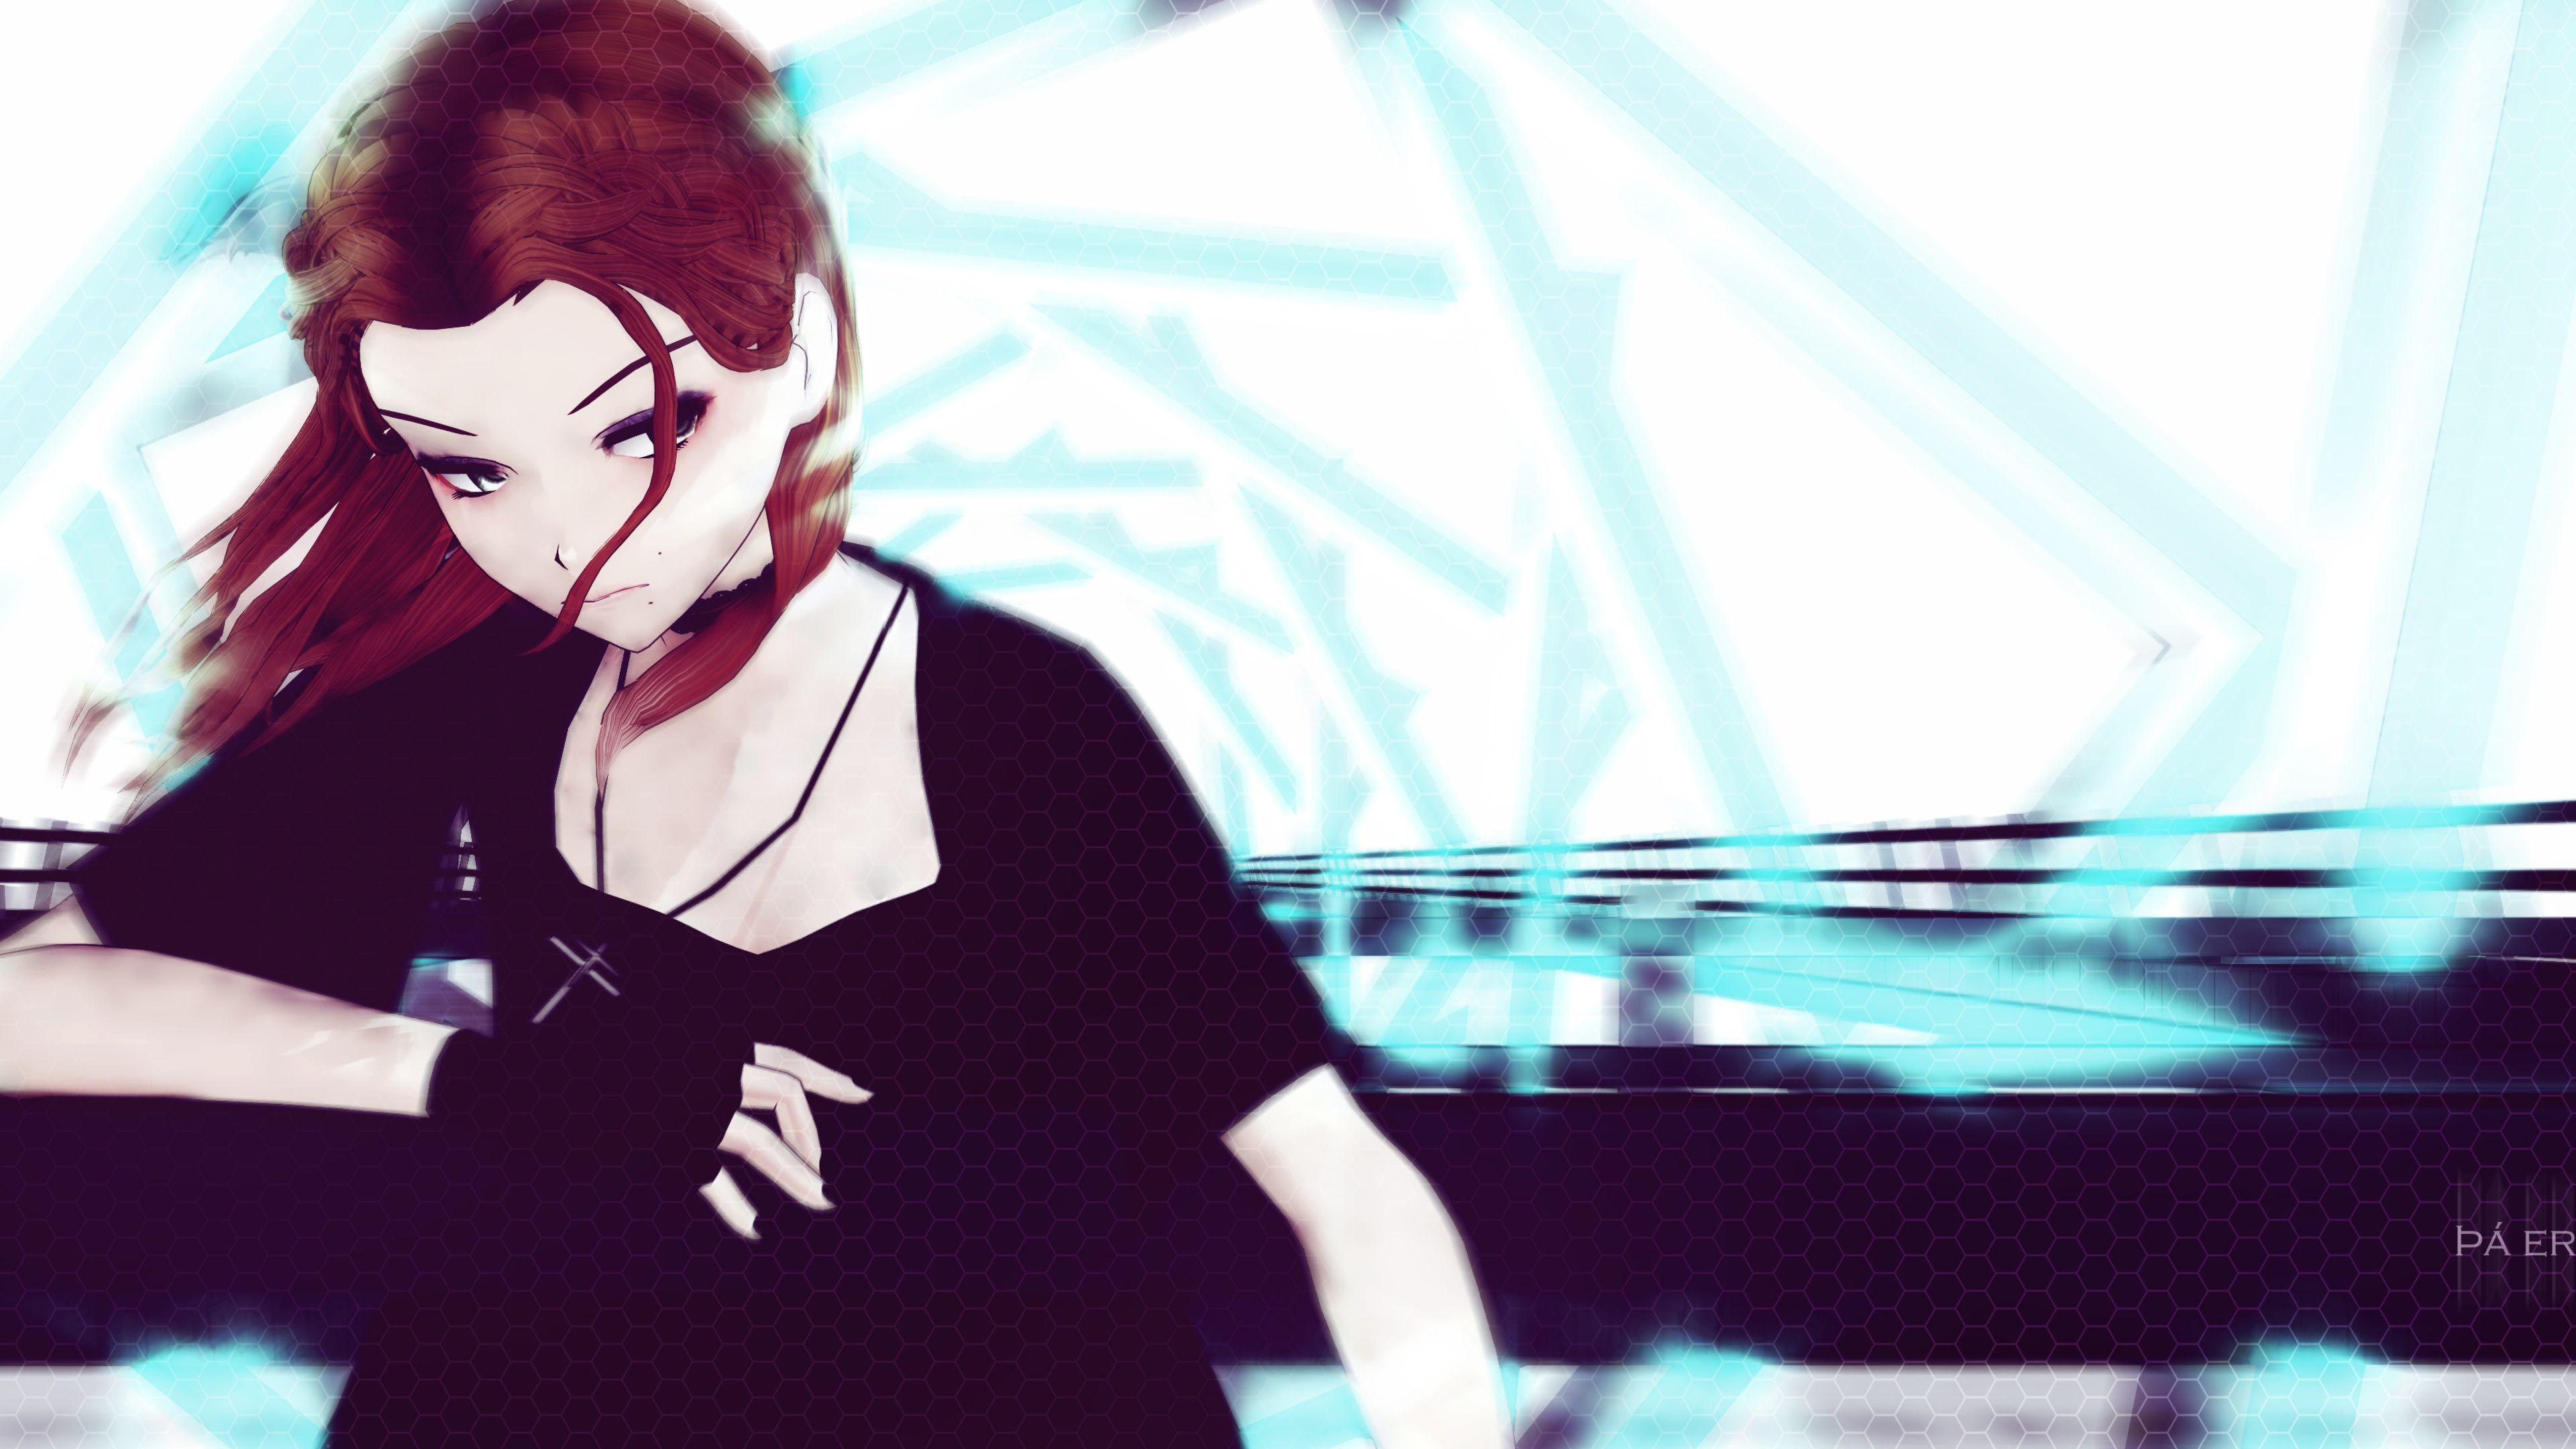 3840x2160 Hình nền 4k Redhead Anime Girl Vòng cổ 4k Hình nền 4k, Hình nền Anime Girl, Hình nền Anime, Hình nền nghệ sĩ, Hình nền tác phẩm nghệ thuật, Hình nền nghệ thuật số, Hình nền hd, Hình nền tóc đỏ